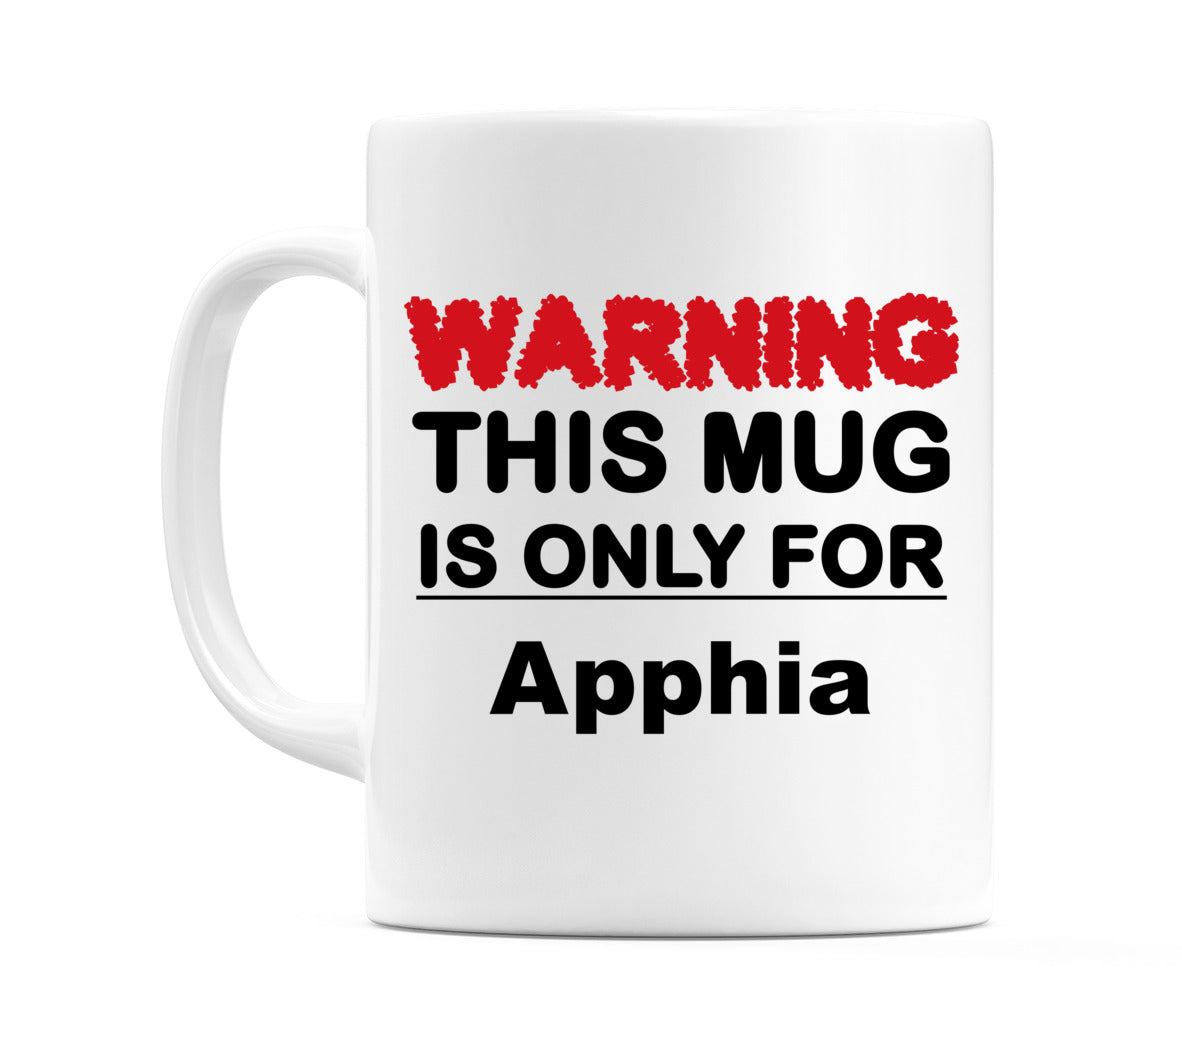 Warning This Mug is ONLY for Apphia Mug